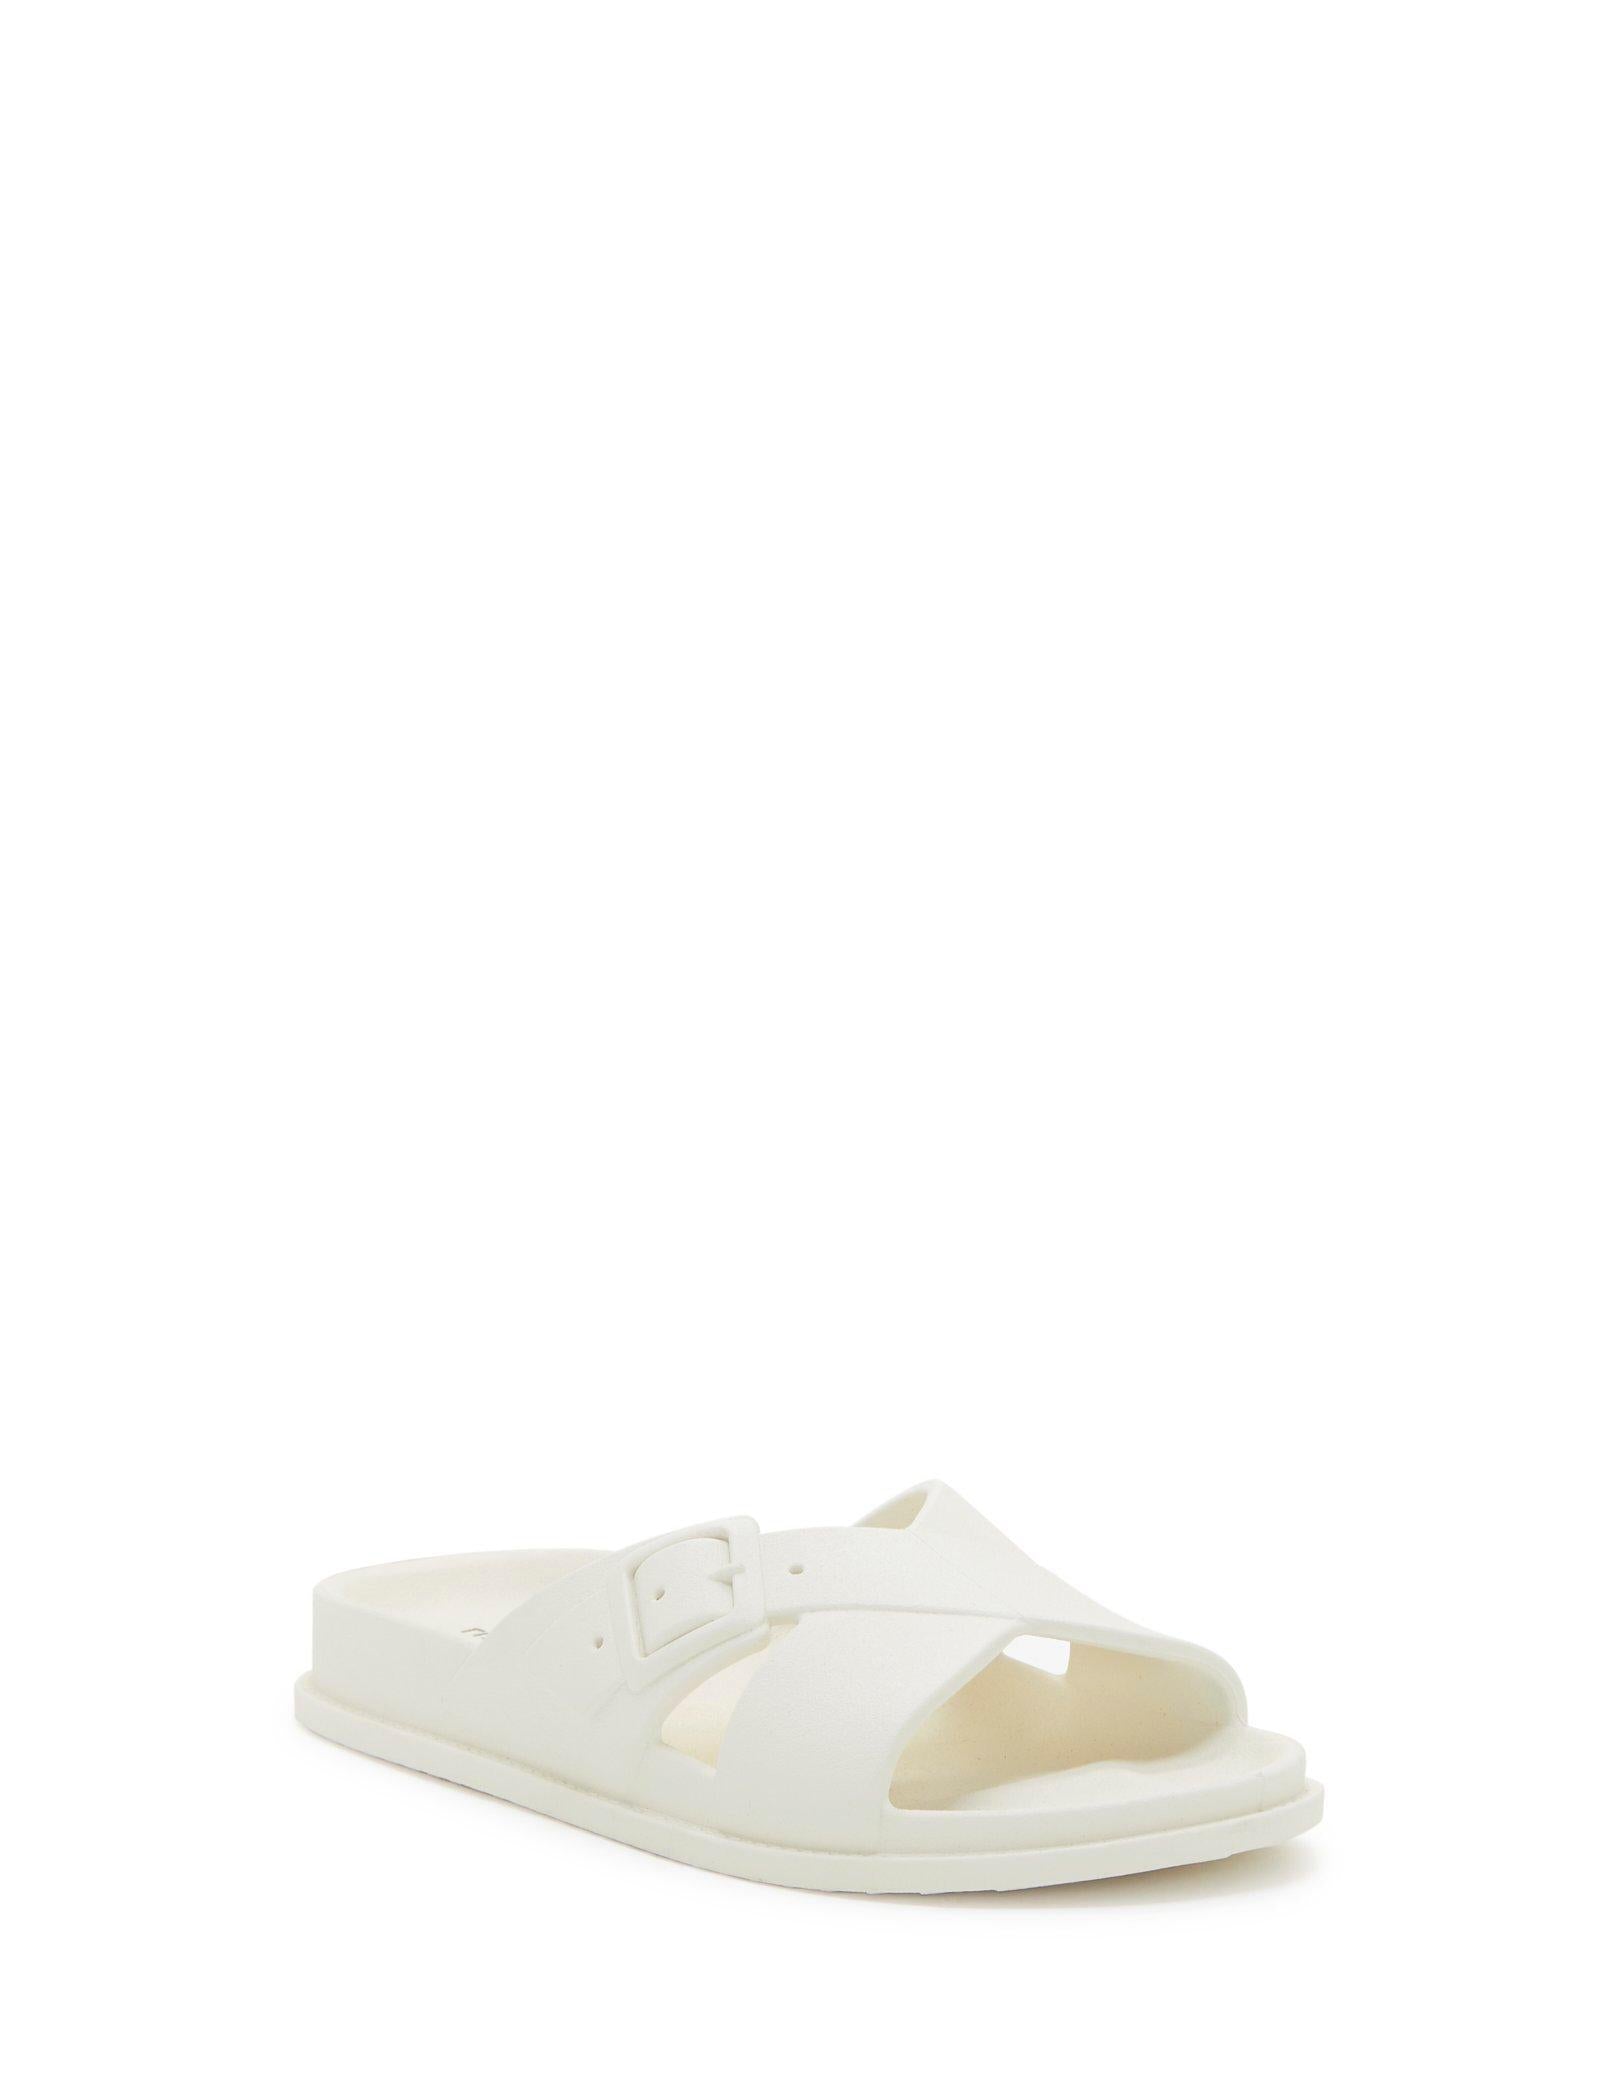 Lucky Brand Roseleen Slide - Women's Accessories Shoes Slides White